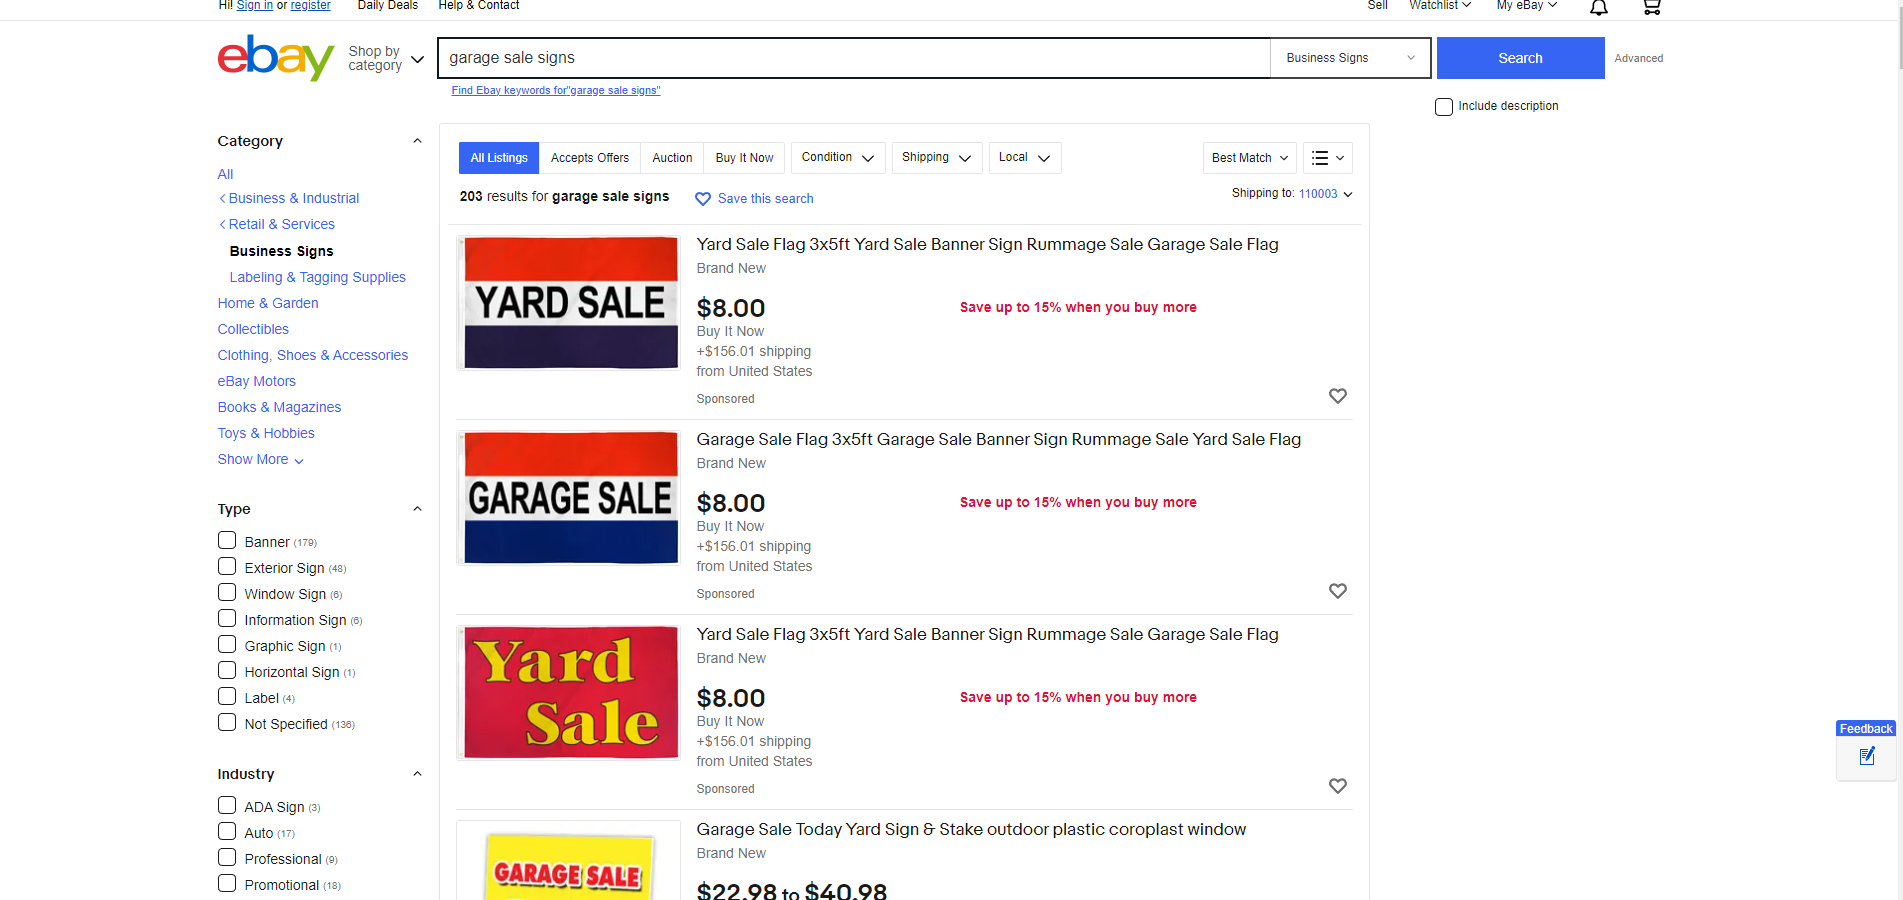 ebay garage sale signs